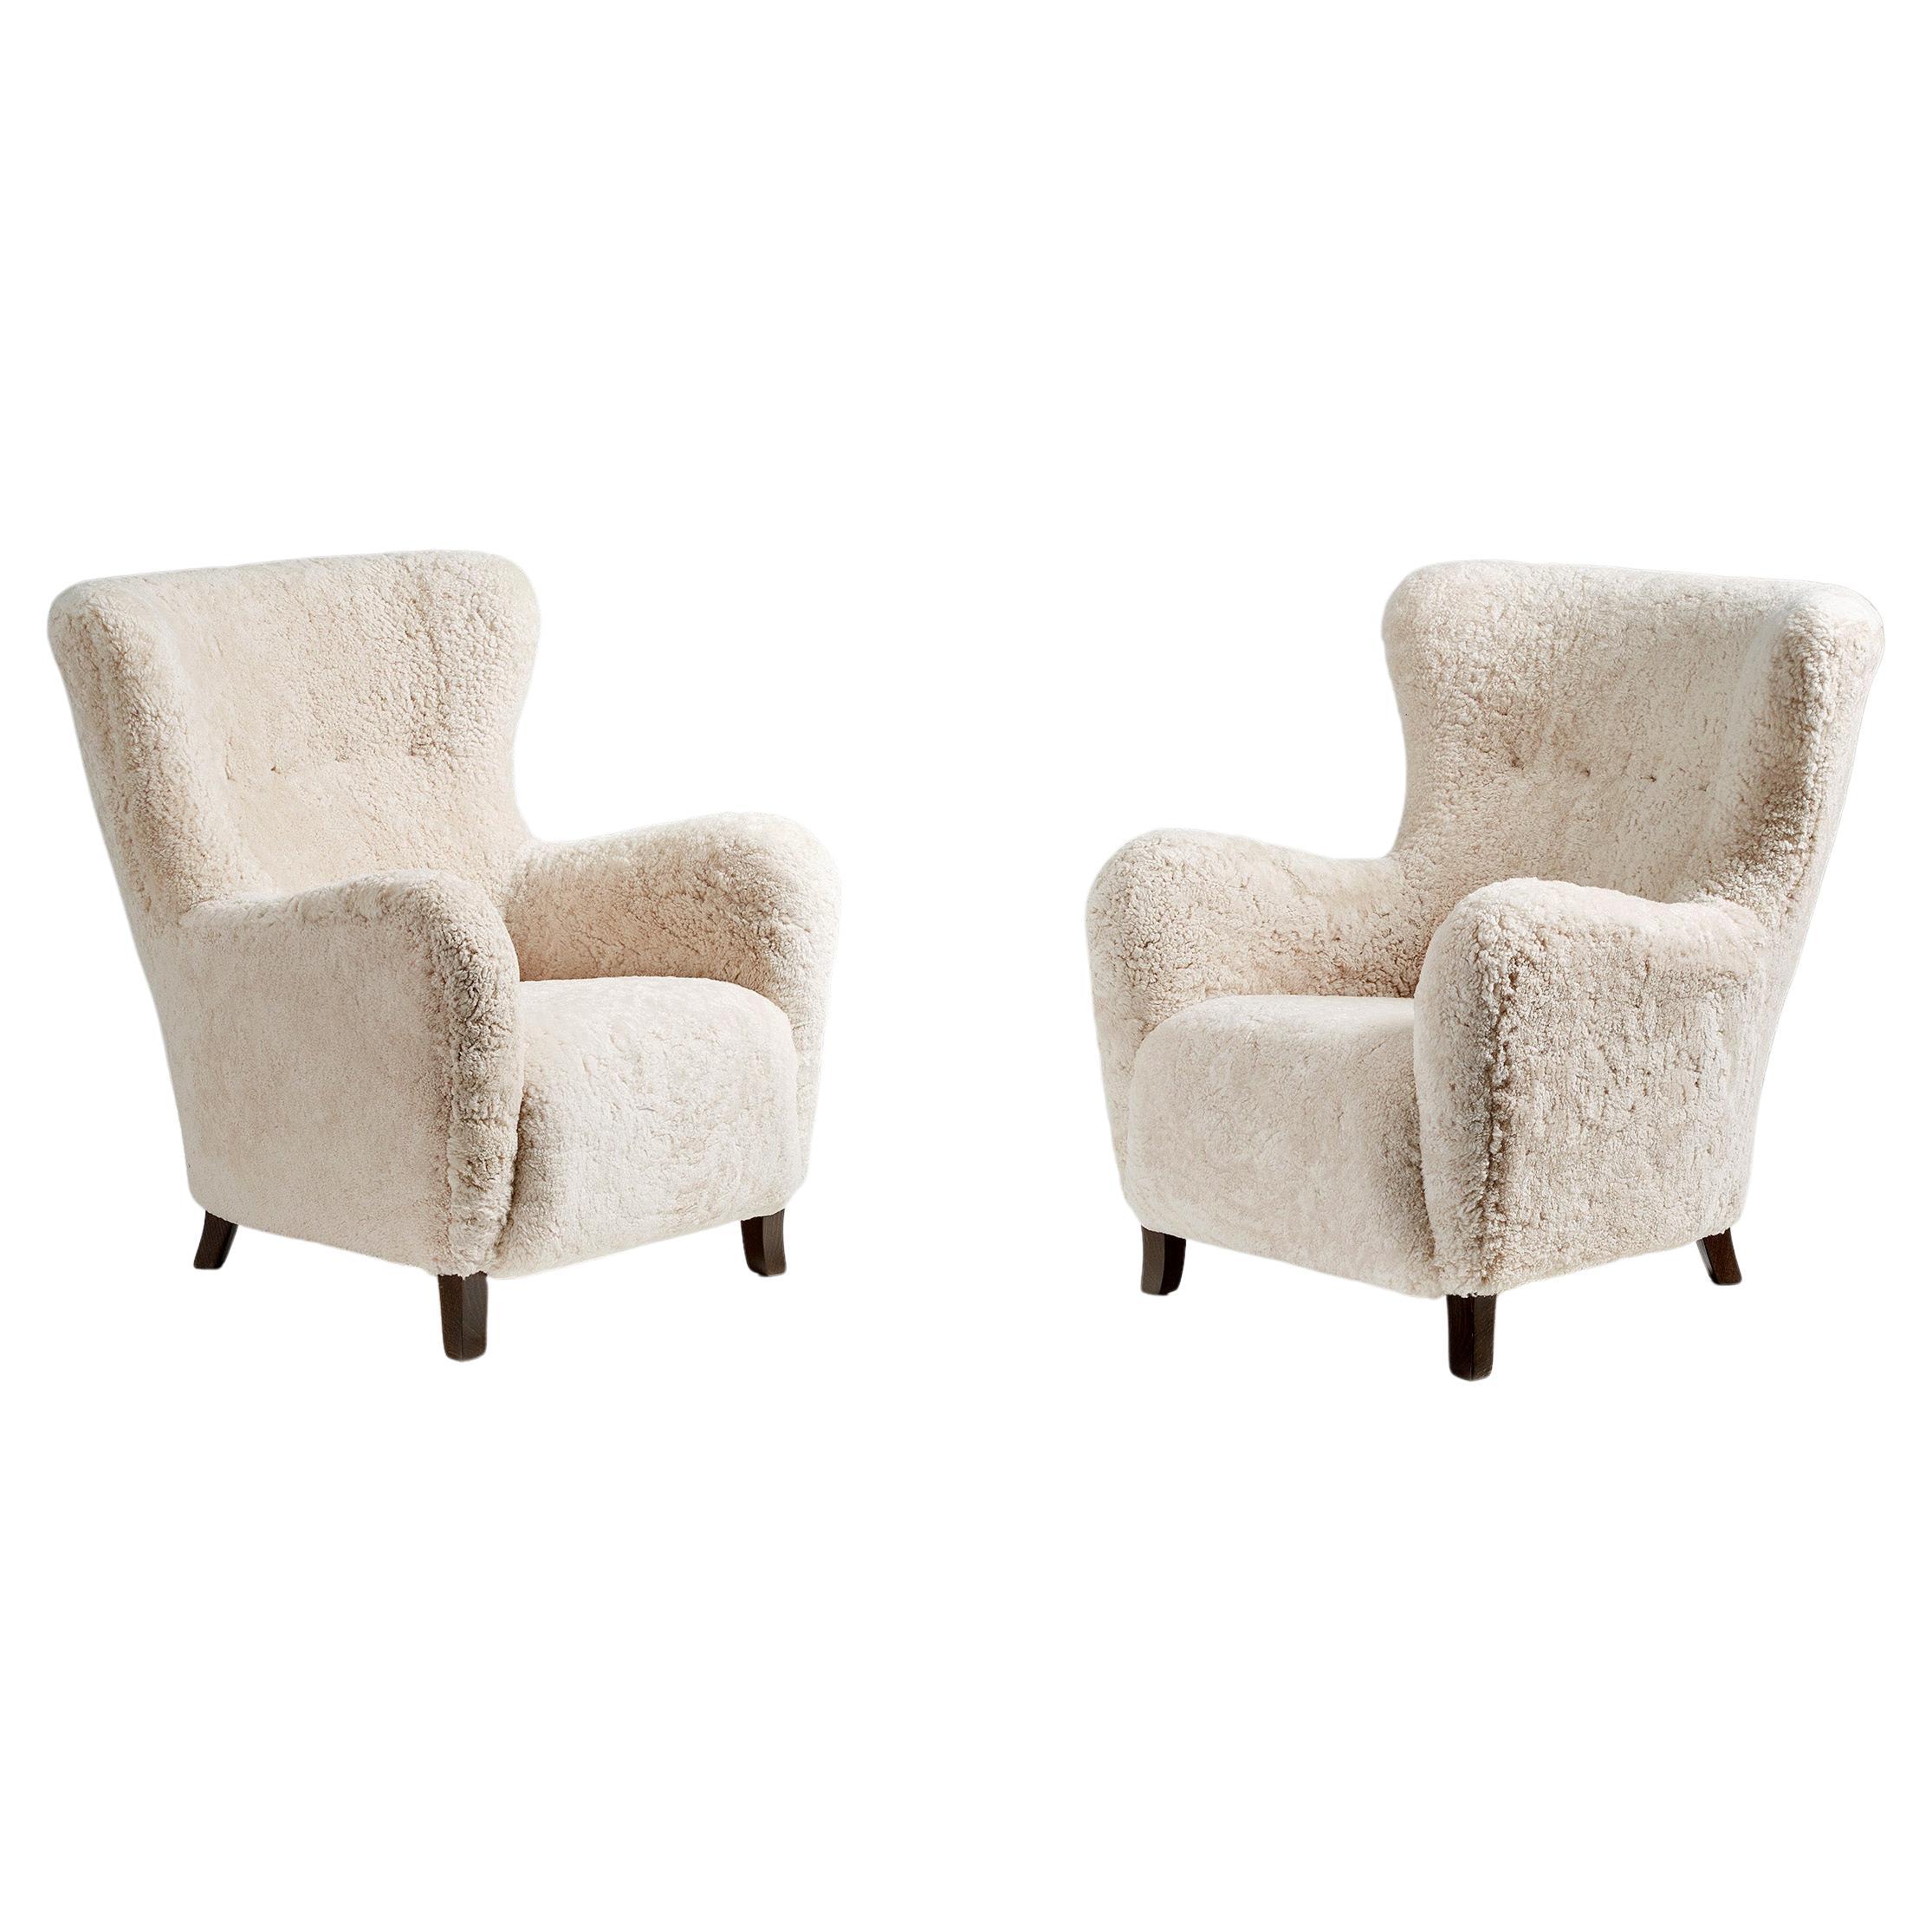 Pair of Custom Made Sheepskin Wing Chairs